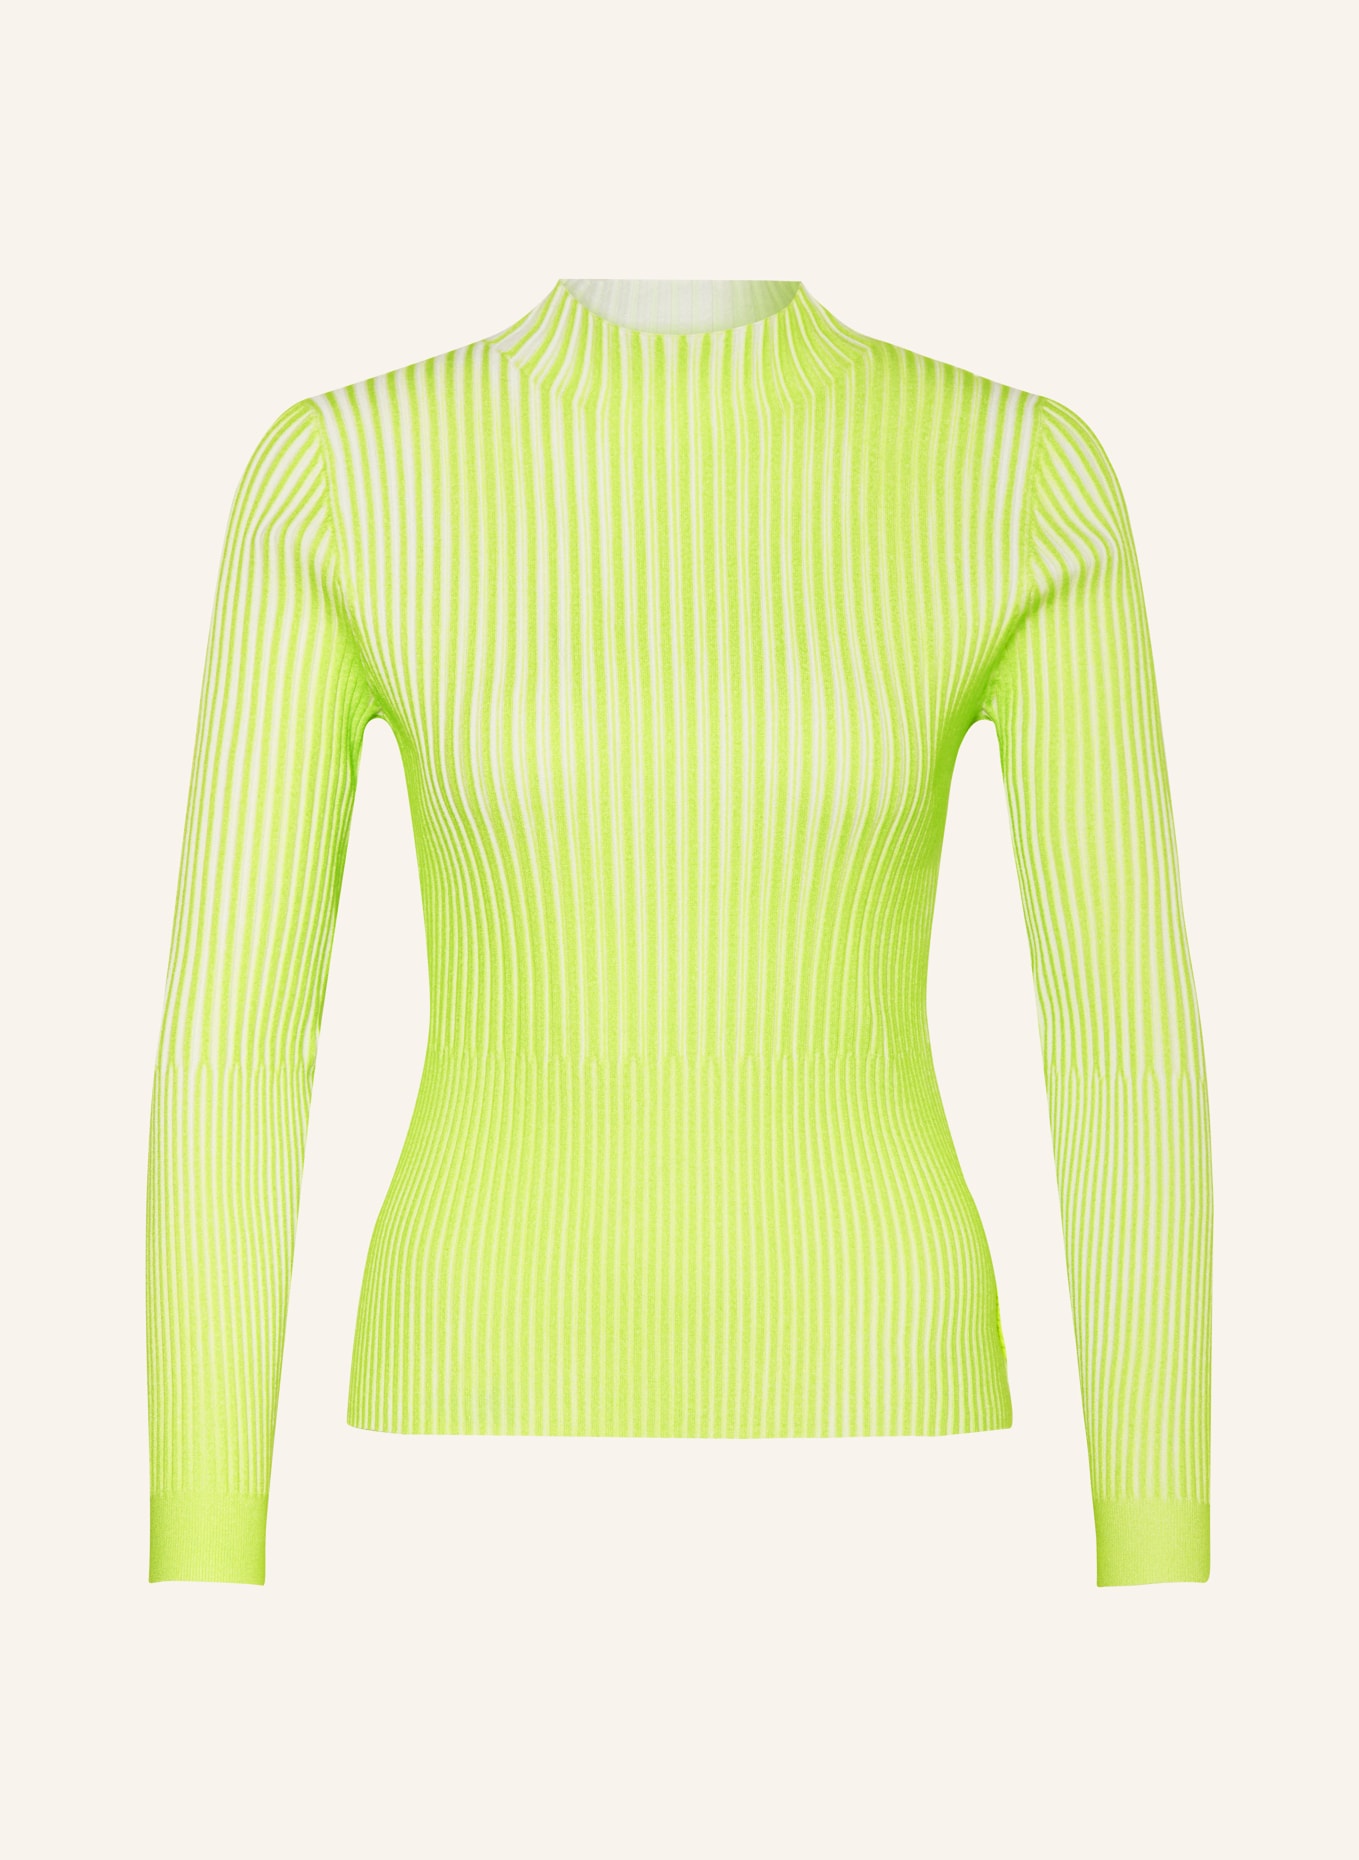 ULLI EHRLICH SPORTALM Sweater, Color: NEON GREEN/ ECRU (Image 1)